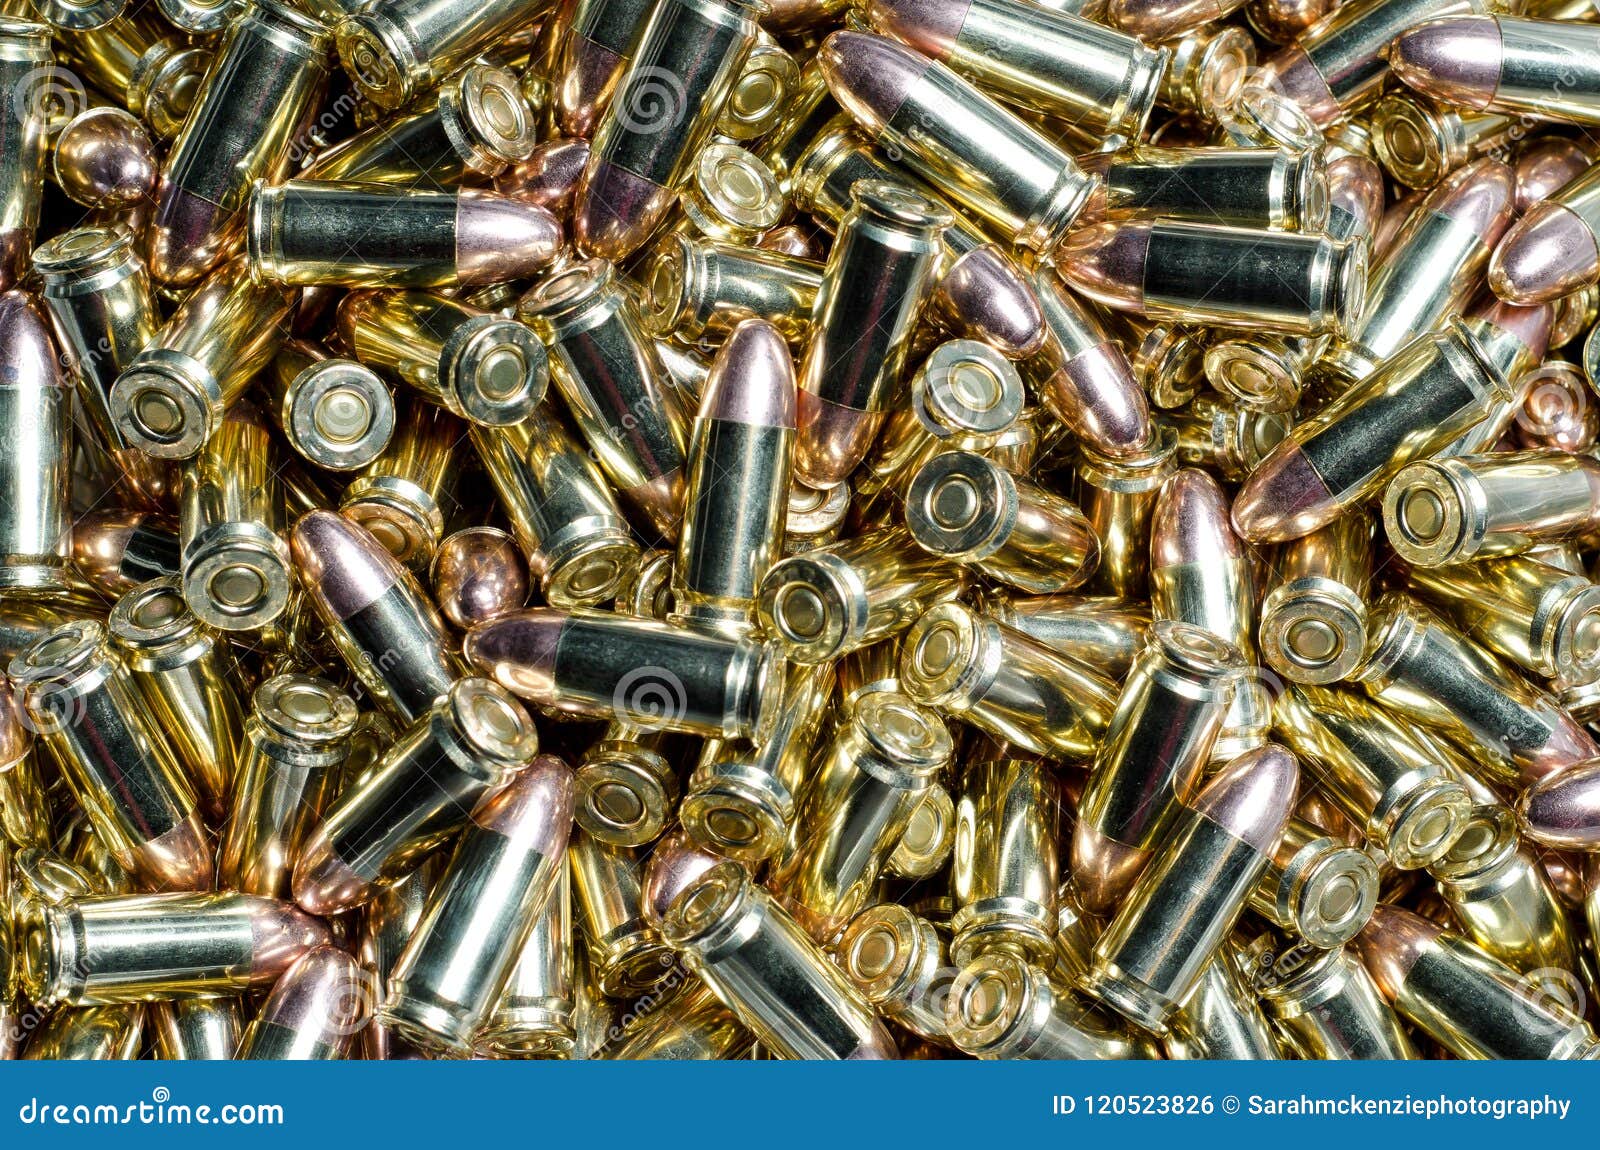 background of 9mm bullets jumbled together